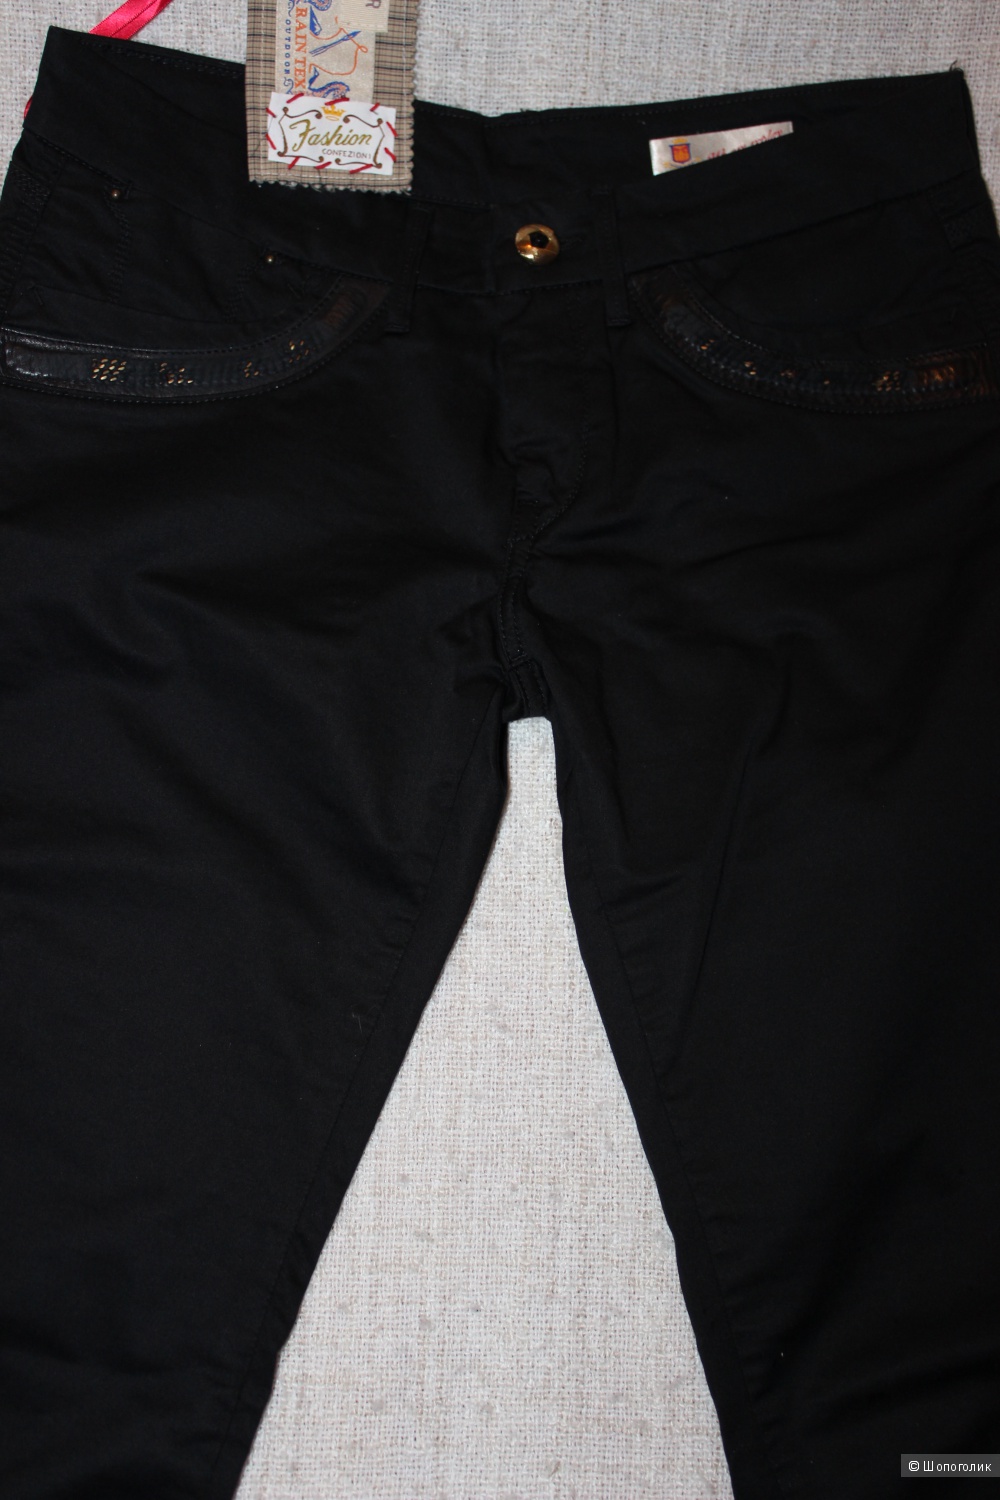 Брюки/джинсы WE ARE REPLAY, 29 размер (46 RUS), цвет черный.